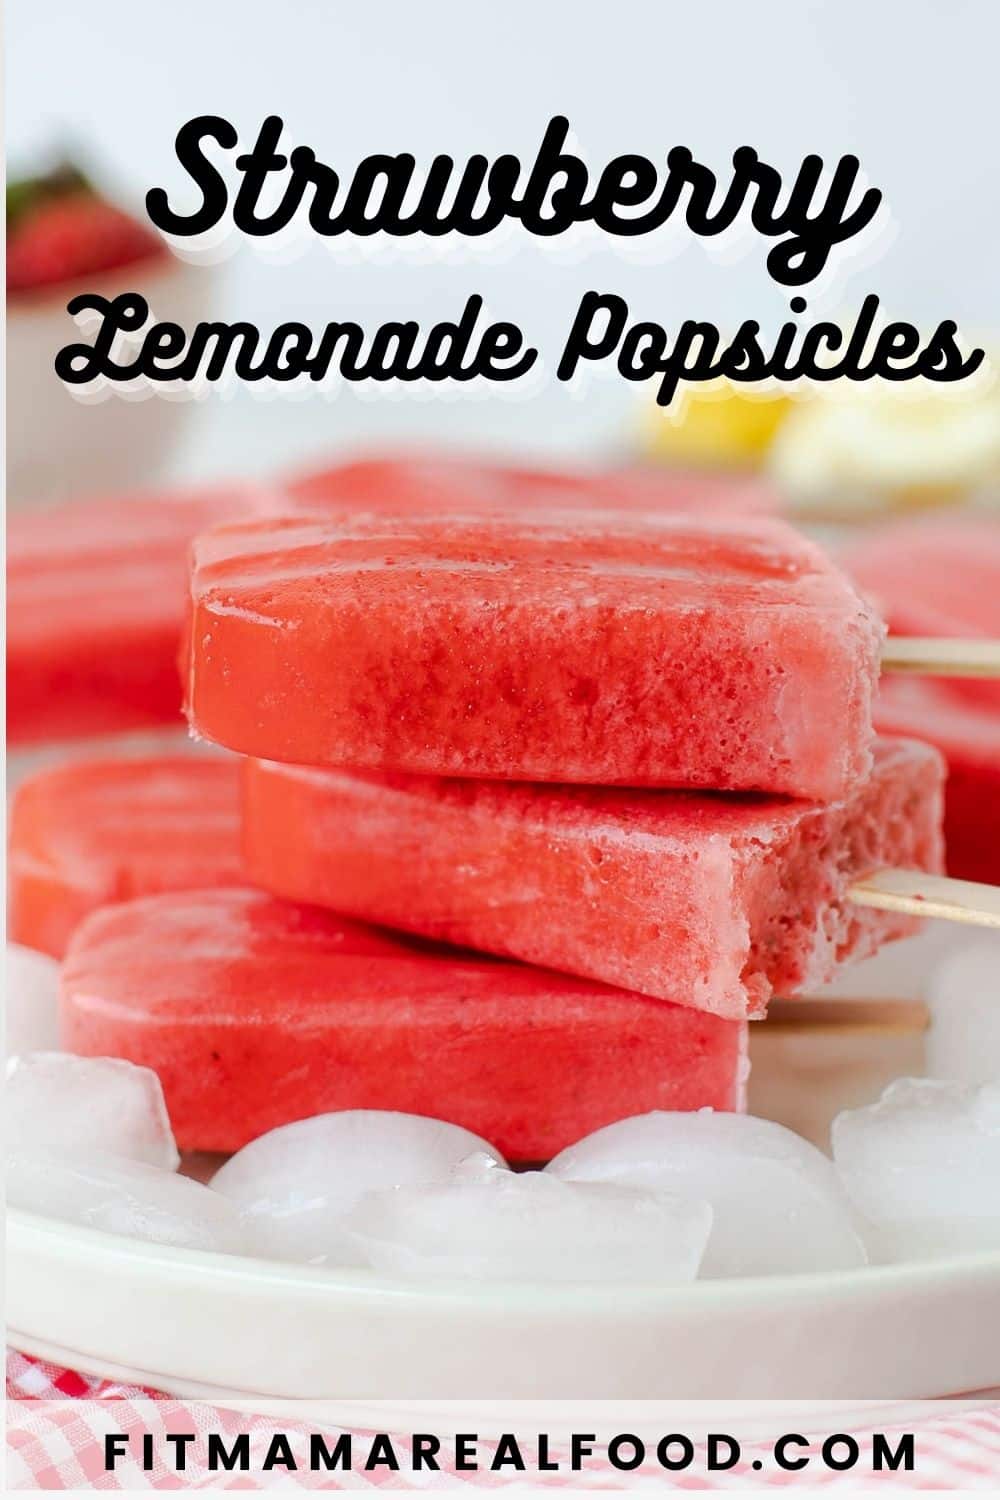 Strawberry Lemonade Popsicles